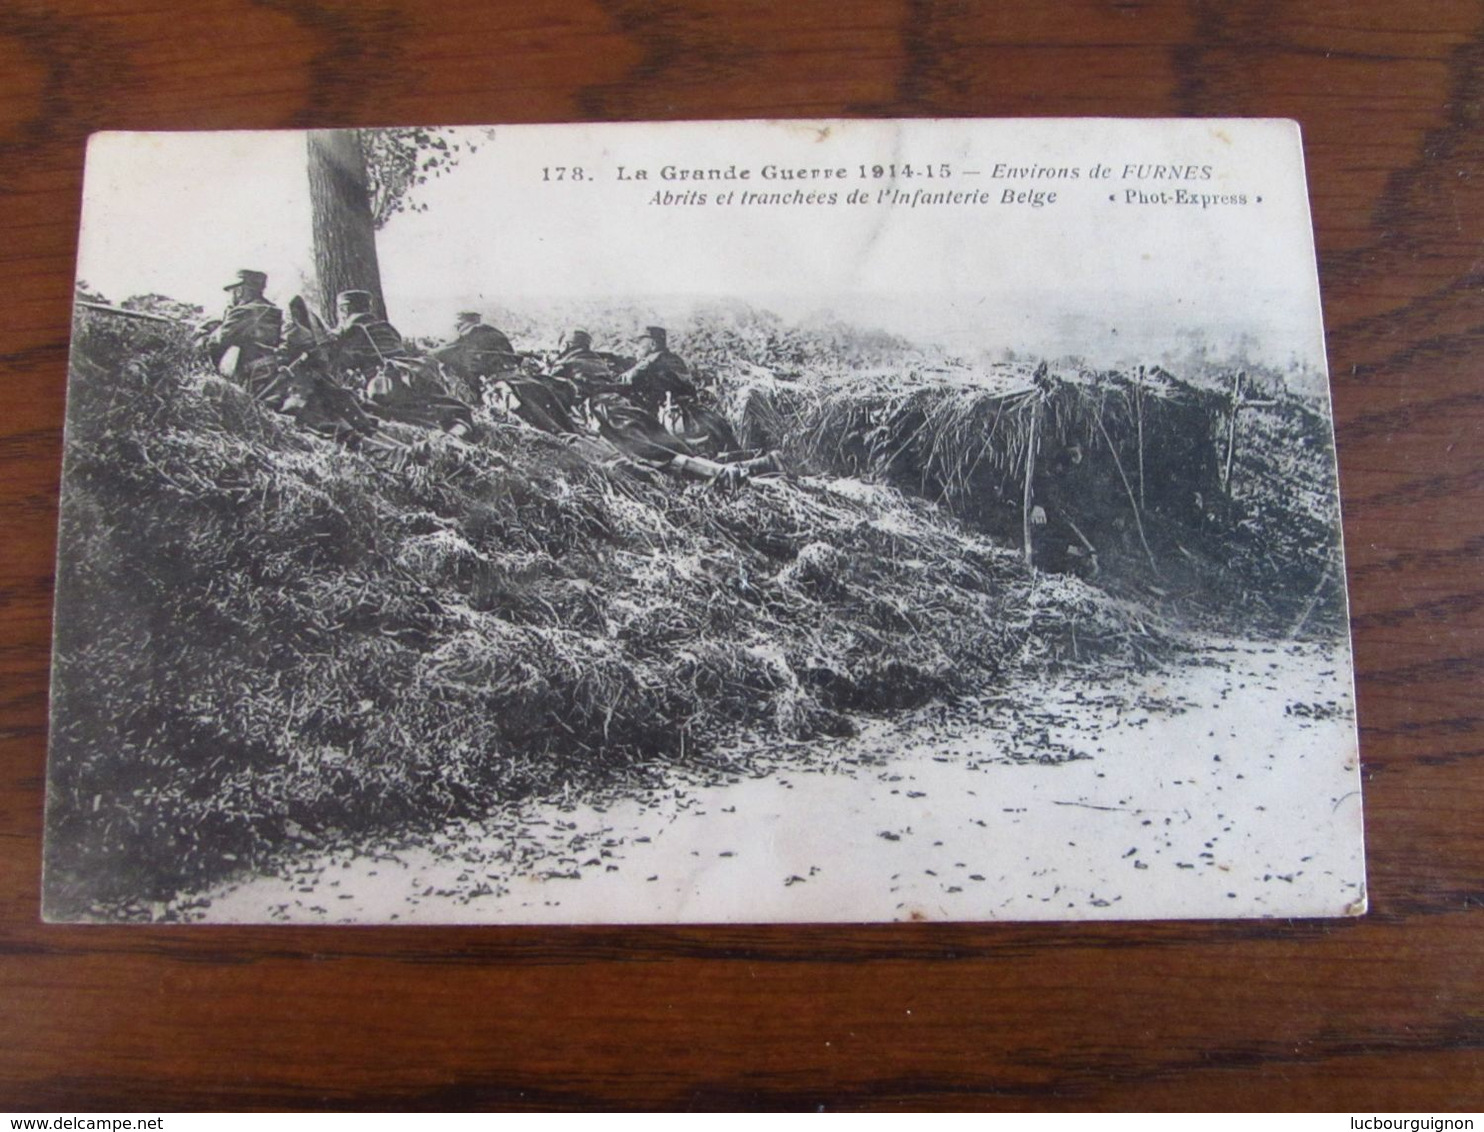 Carte Vue De FURNES En S.M. Oblitérée POPERINGHE Pour VEURNE En 1915 (territoire Non Envahi) - Not Occupied Zone